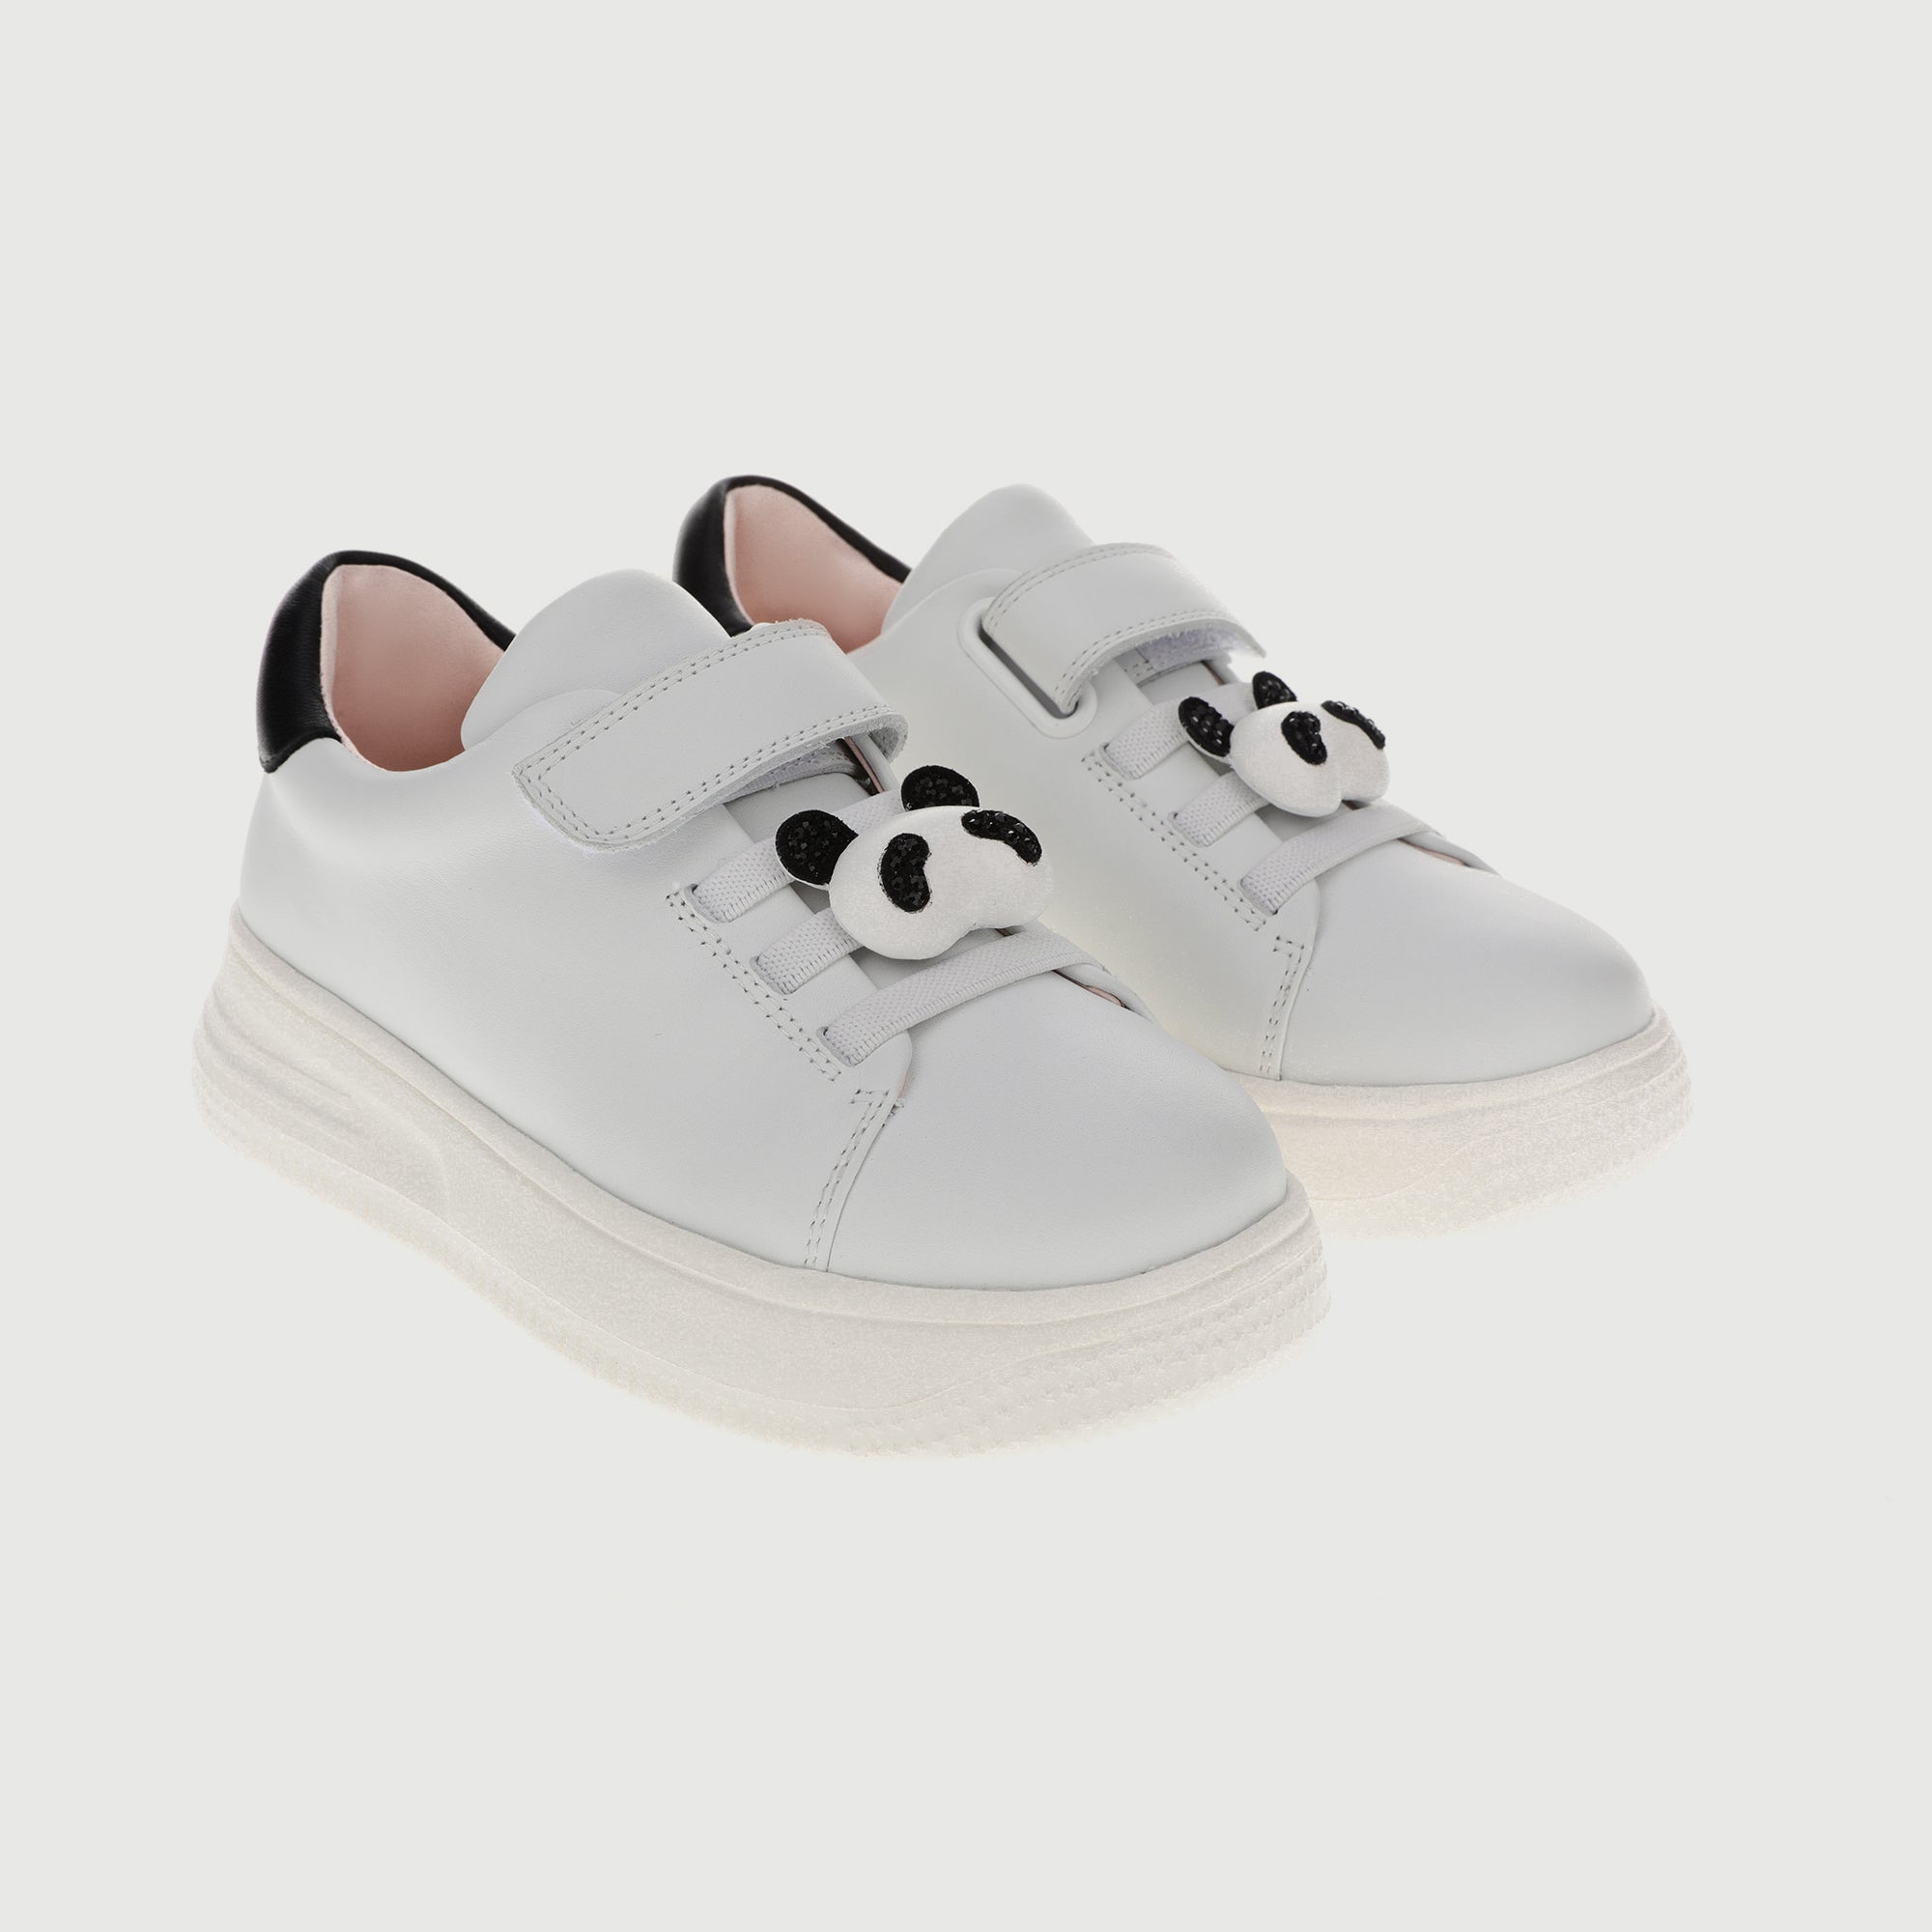 Panda Sneaker-1 (kid)